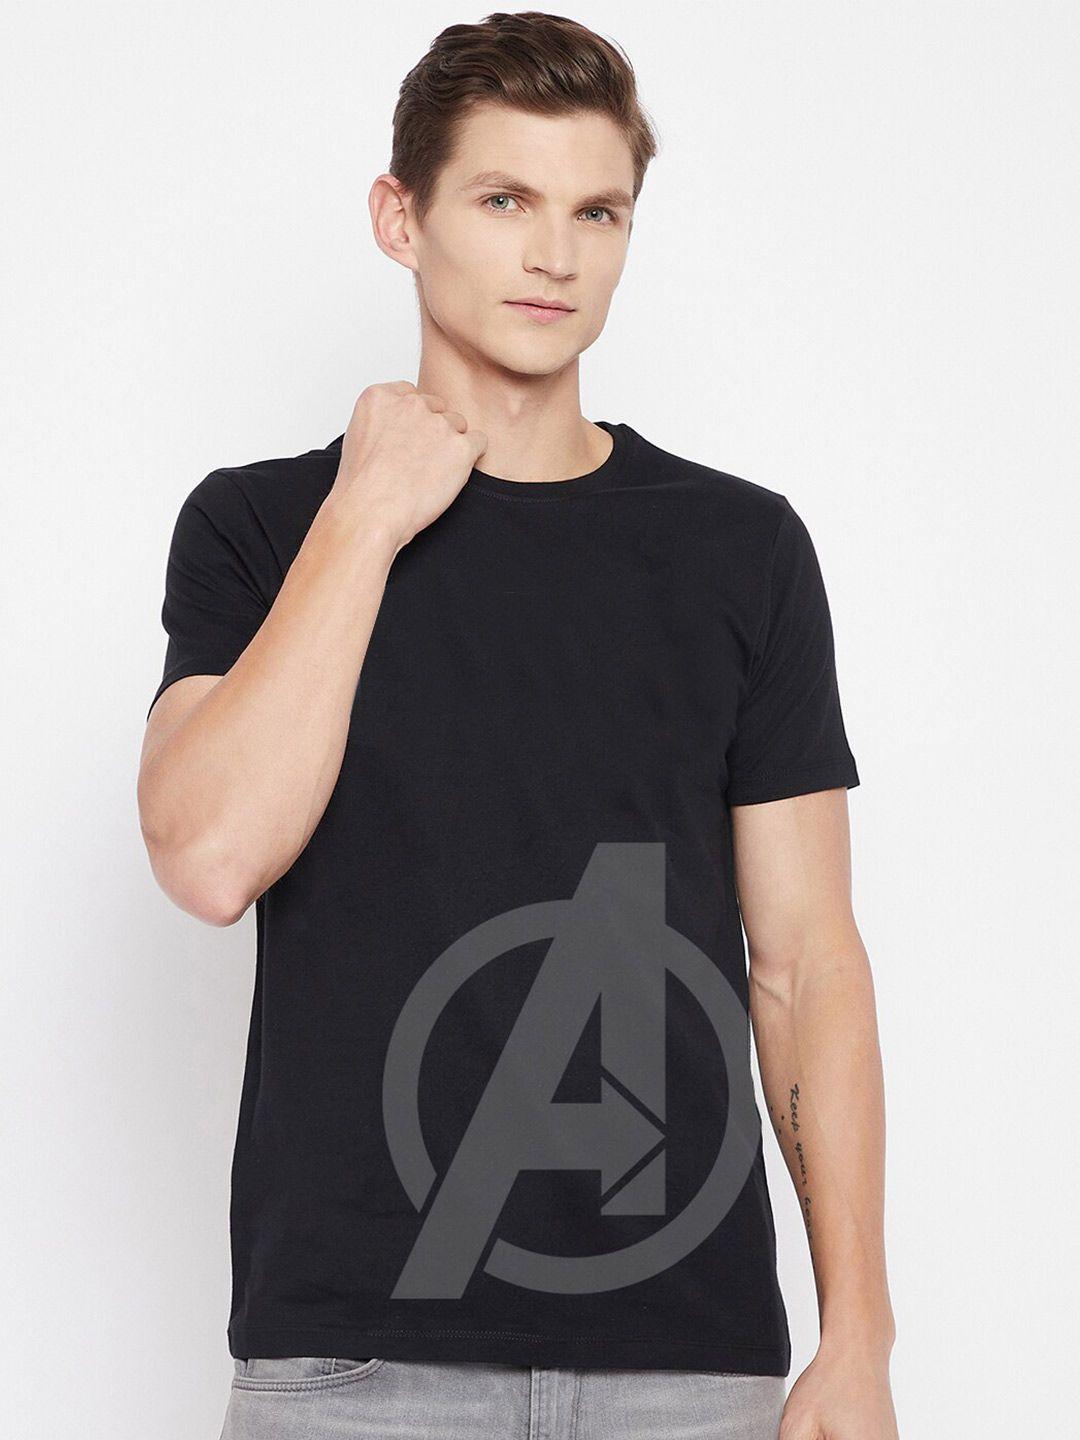 kook n keech marvel men black printed super hero avengers t-shirt